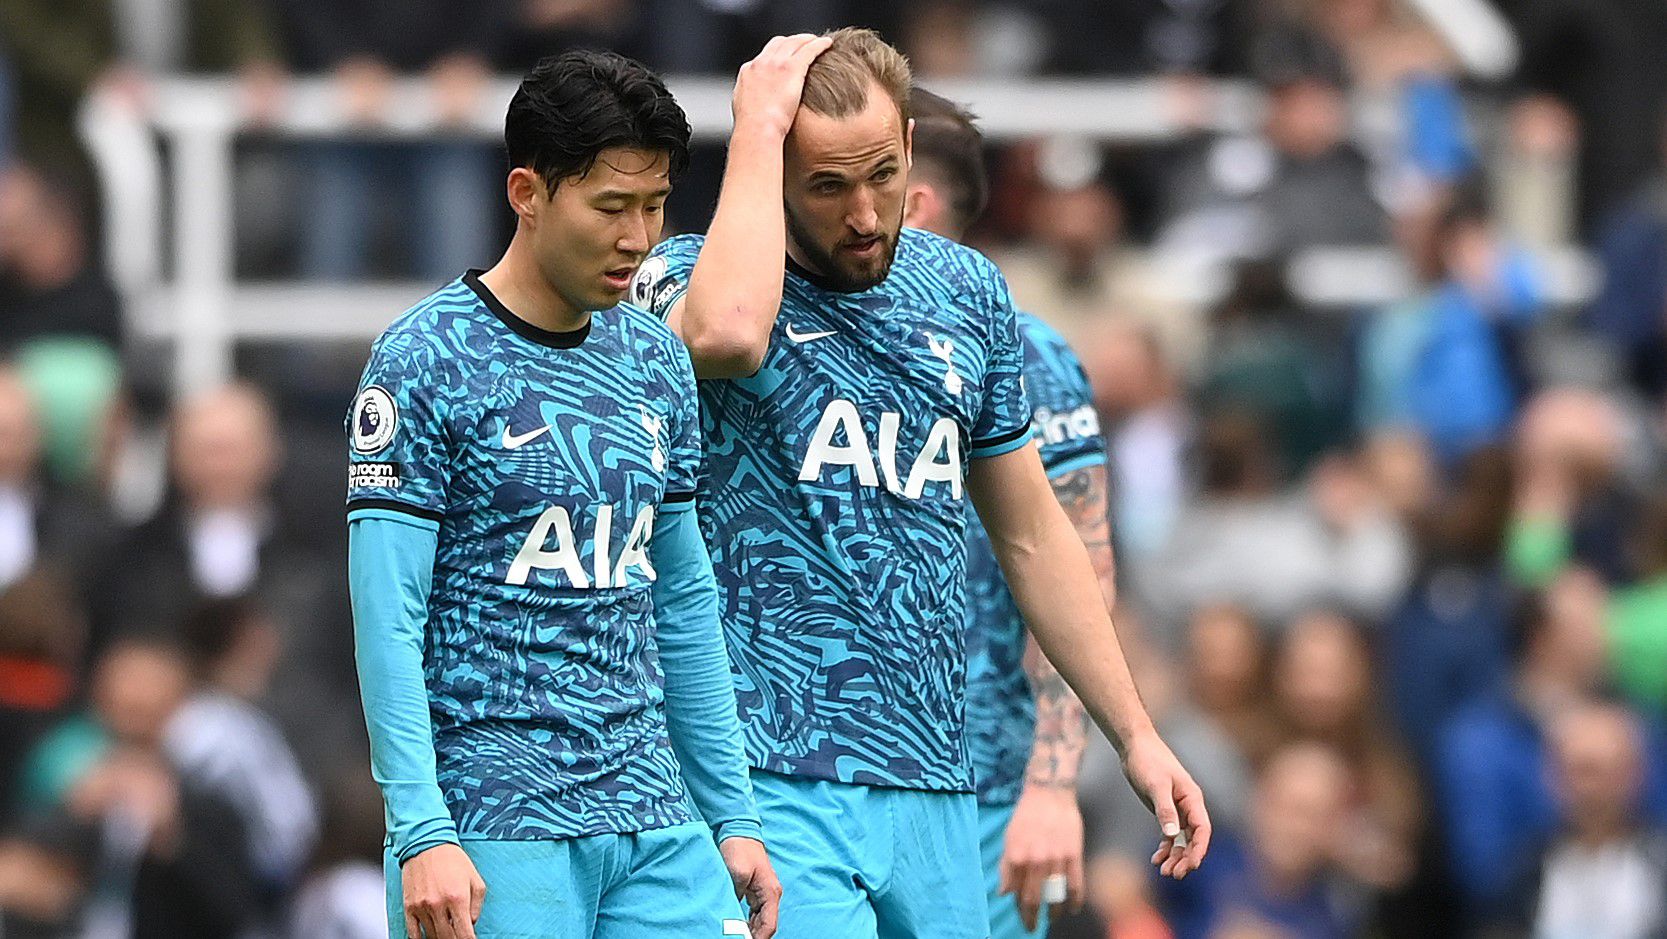 Visszatérítik a meccsjegyek árát a Tottenham játékosai